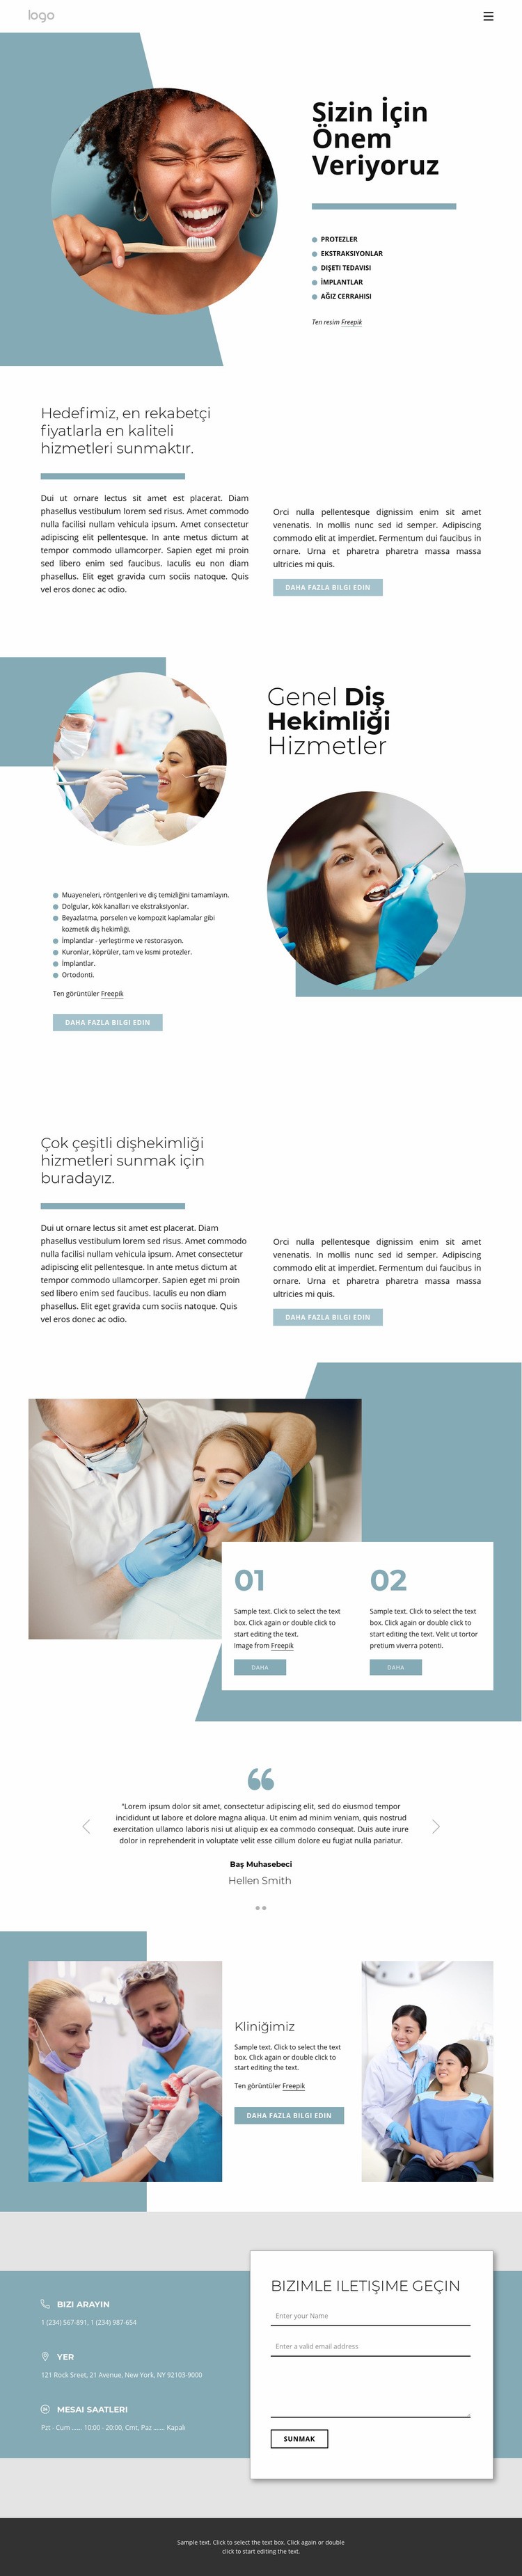 Yüksek kaliteli diş hizmetleri Açılış sayfası